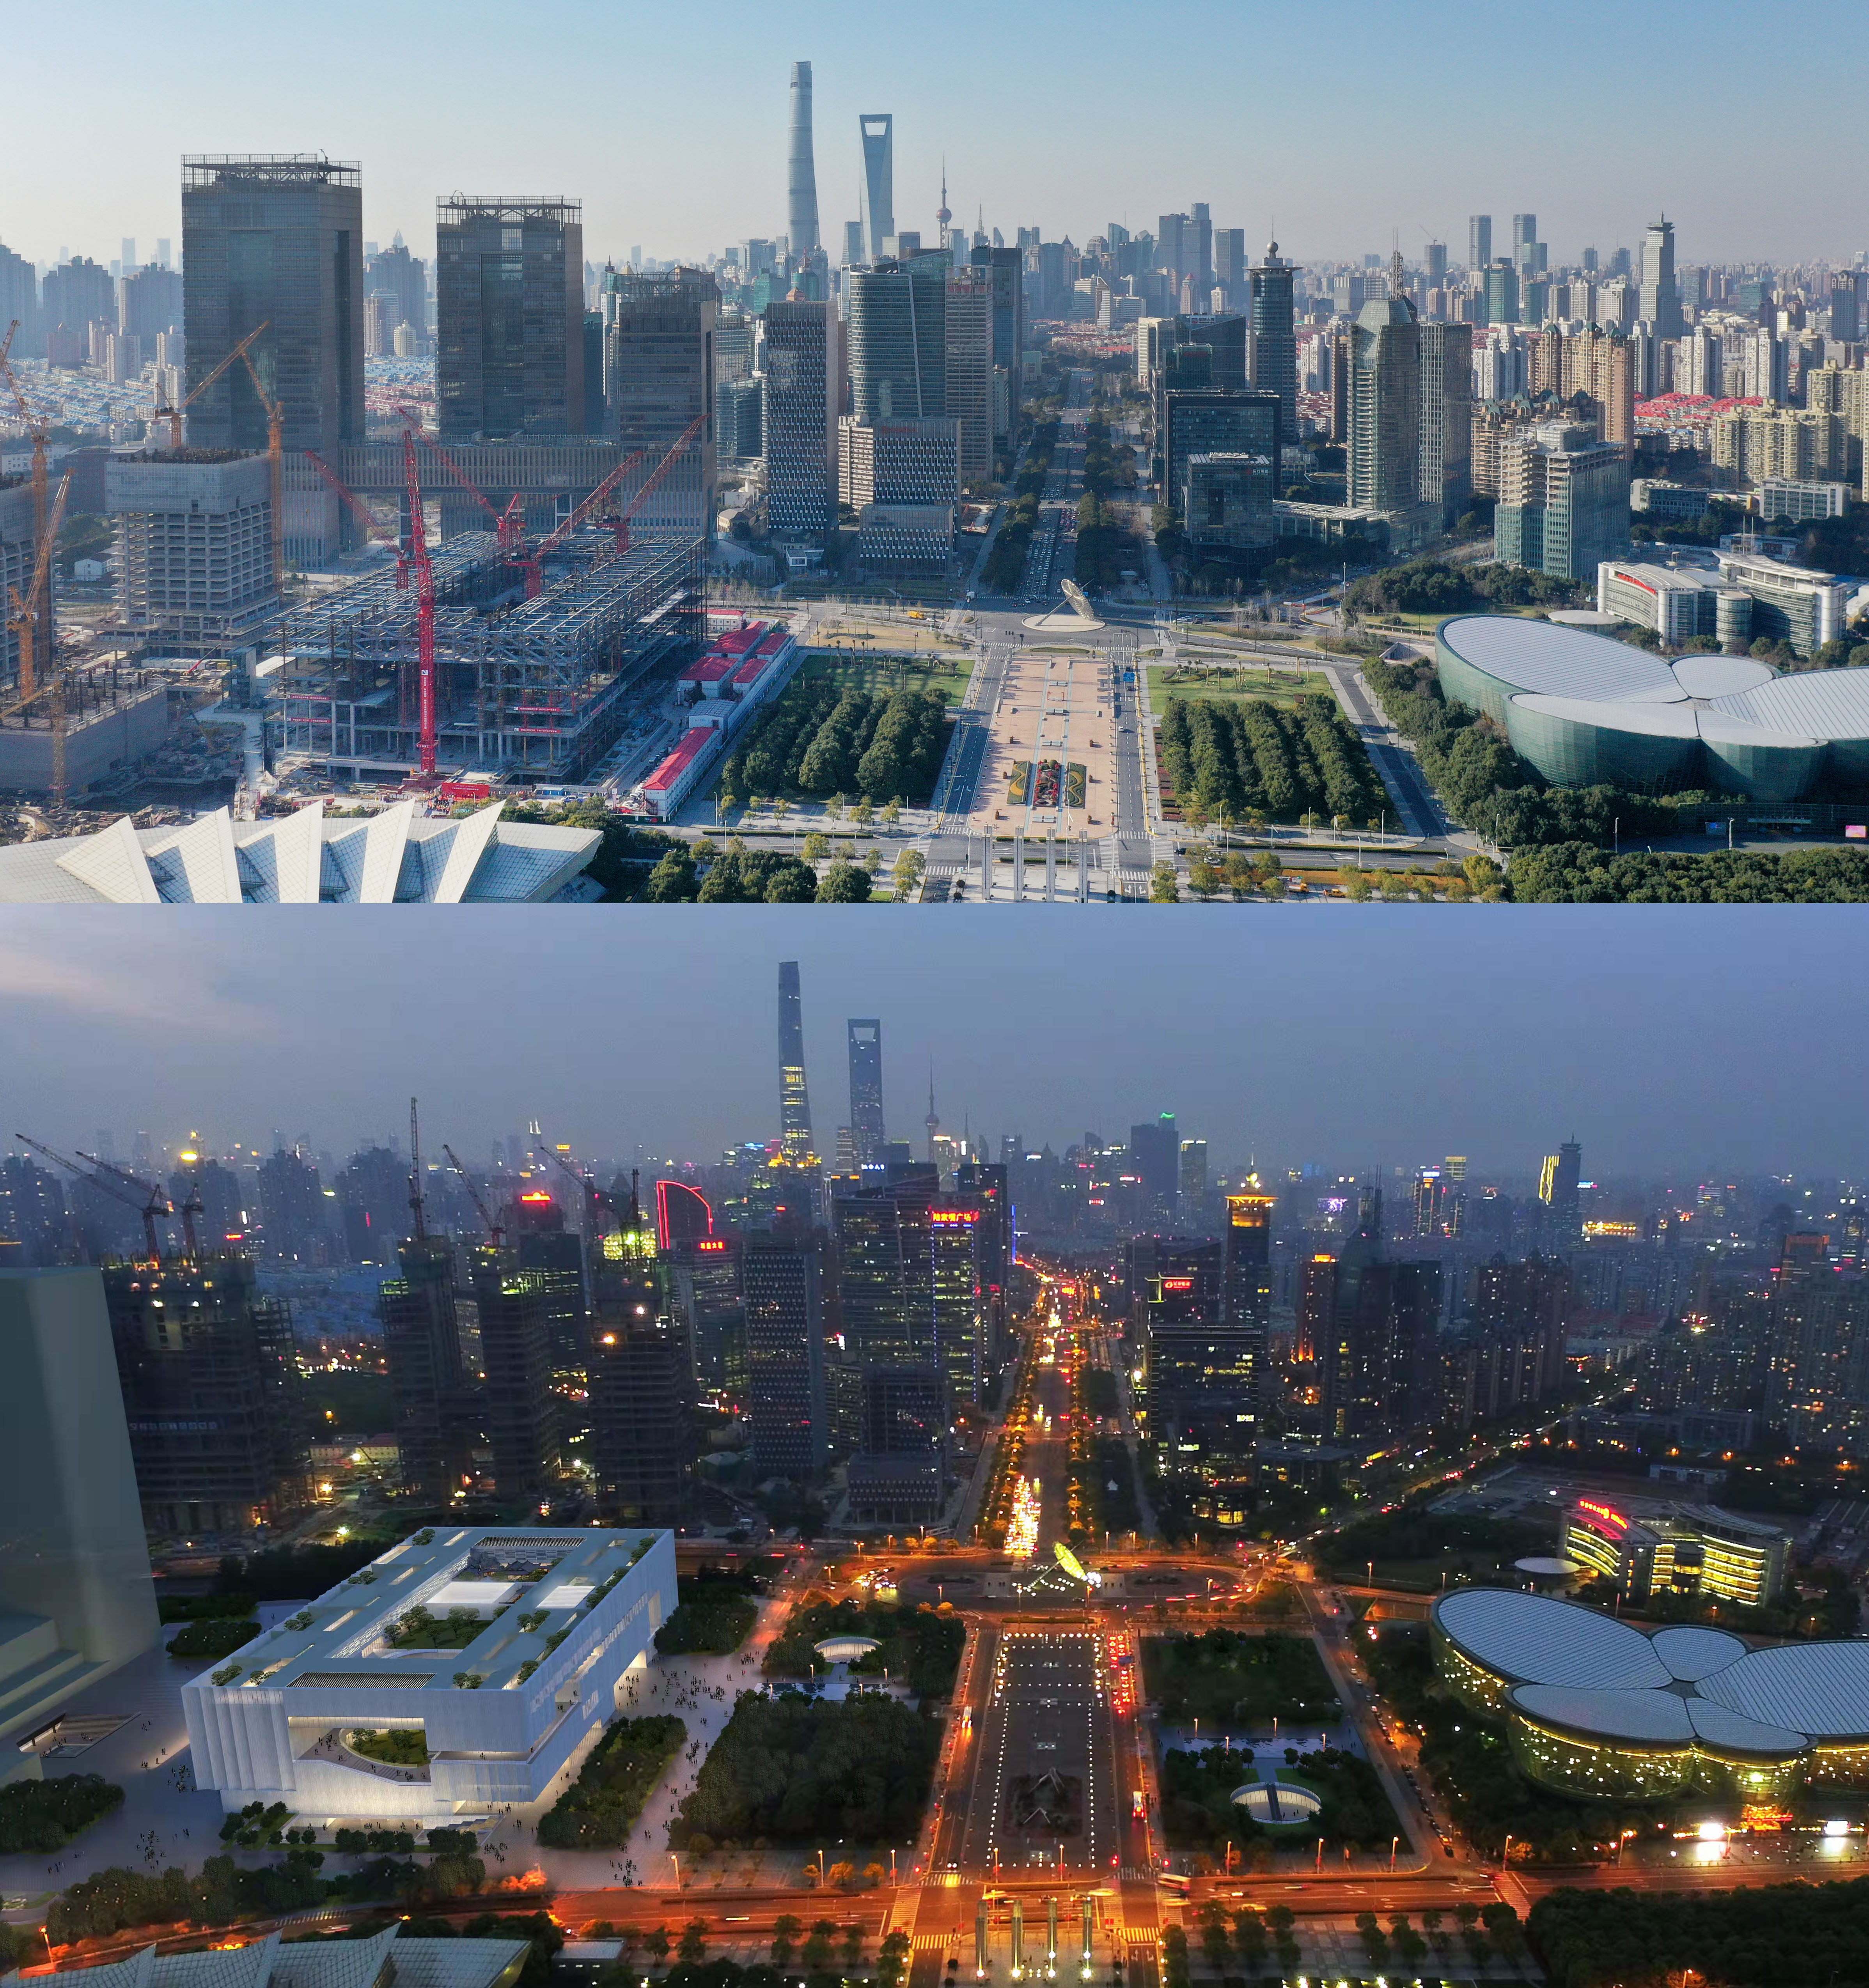 上图为建设中的上海博物馆东馆（12月31日 新华社记者 方喆 摄）；下图为上海博物馆东馆建成效果图。